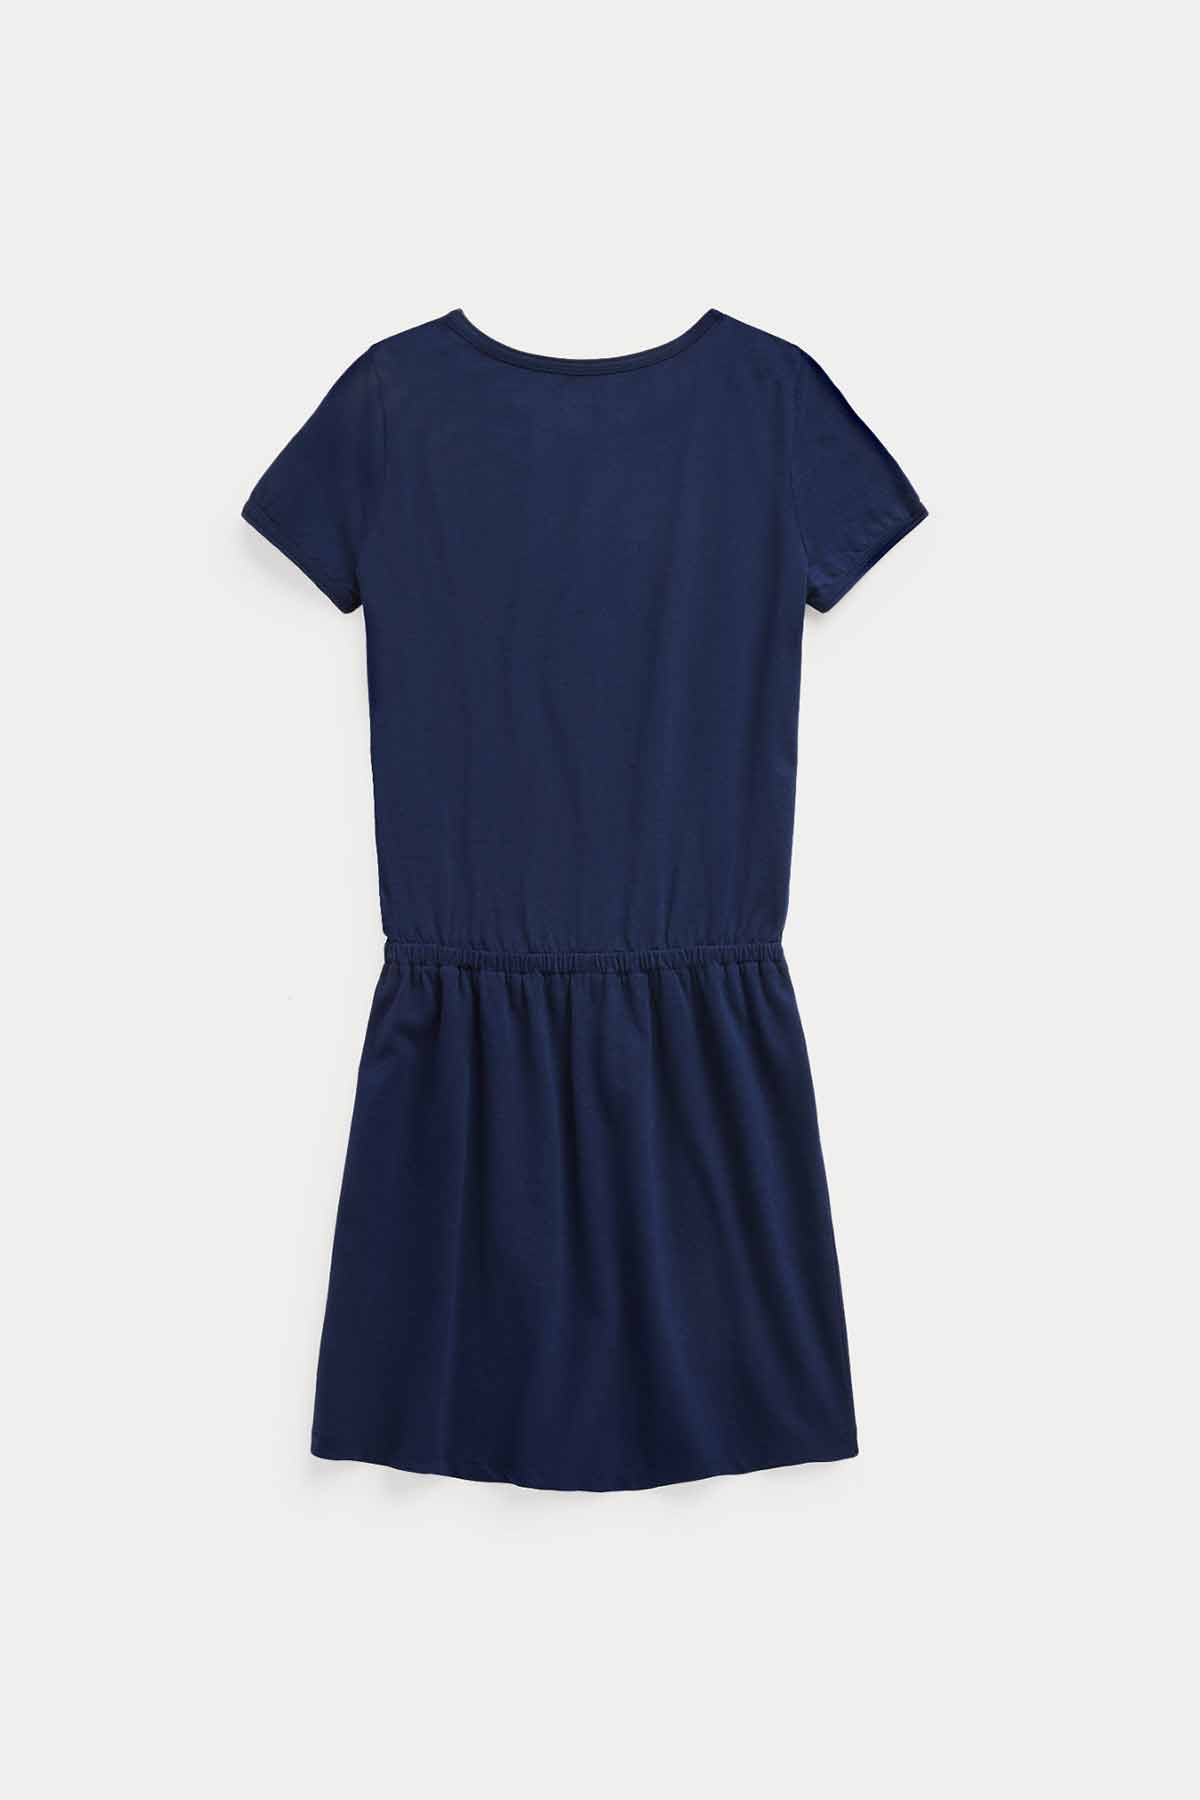 Polo Ralph Lauren S-M Beden Kız Çocuk Belden Büzgülü T-shirt Elbise-Libas Trendy Fashion Store